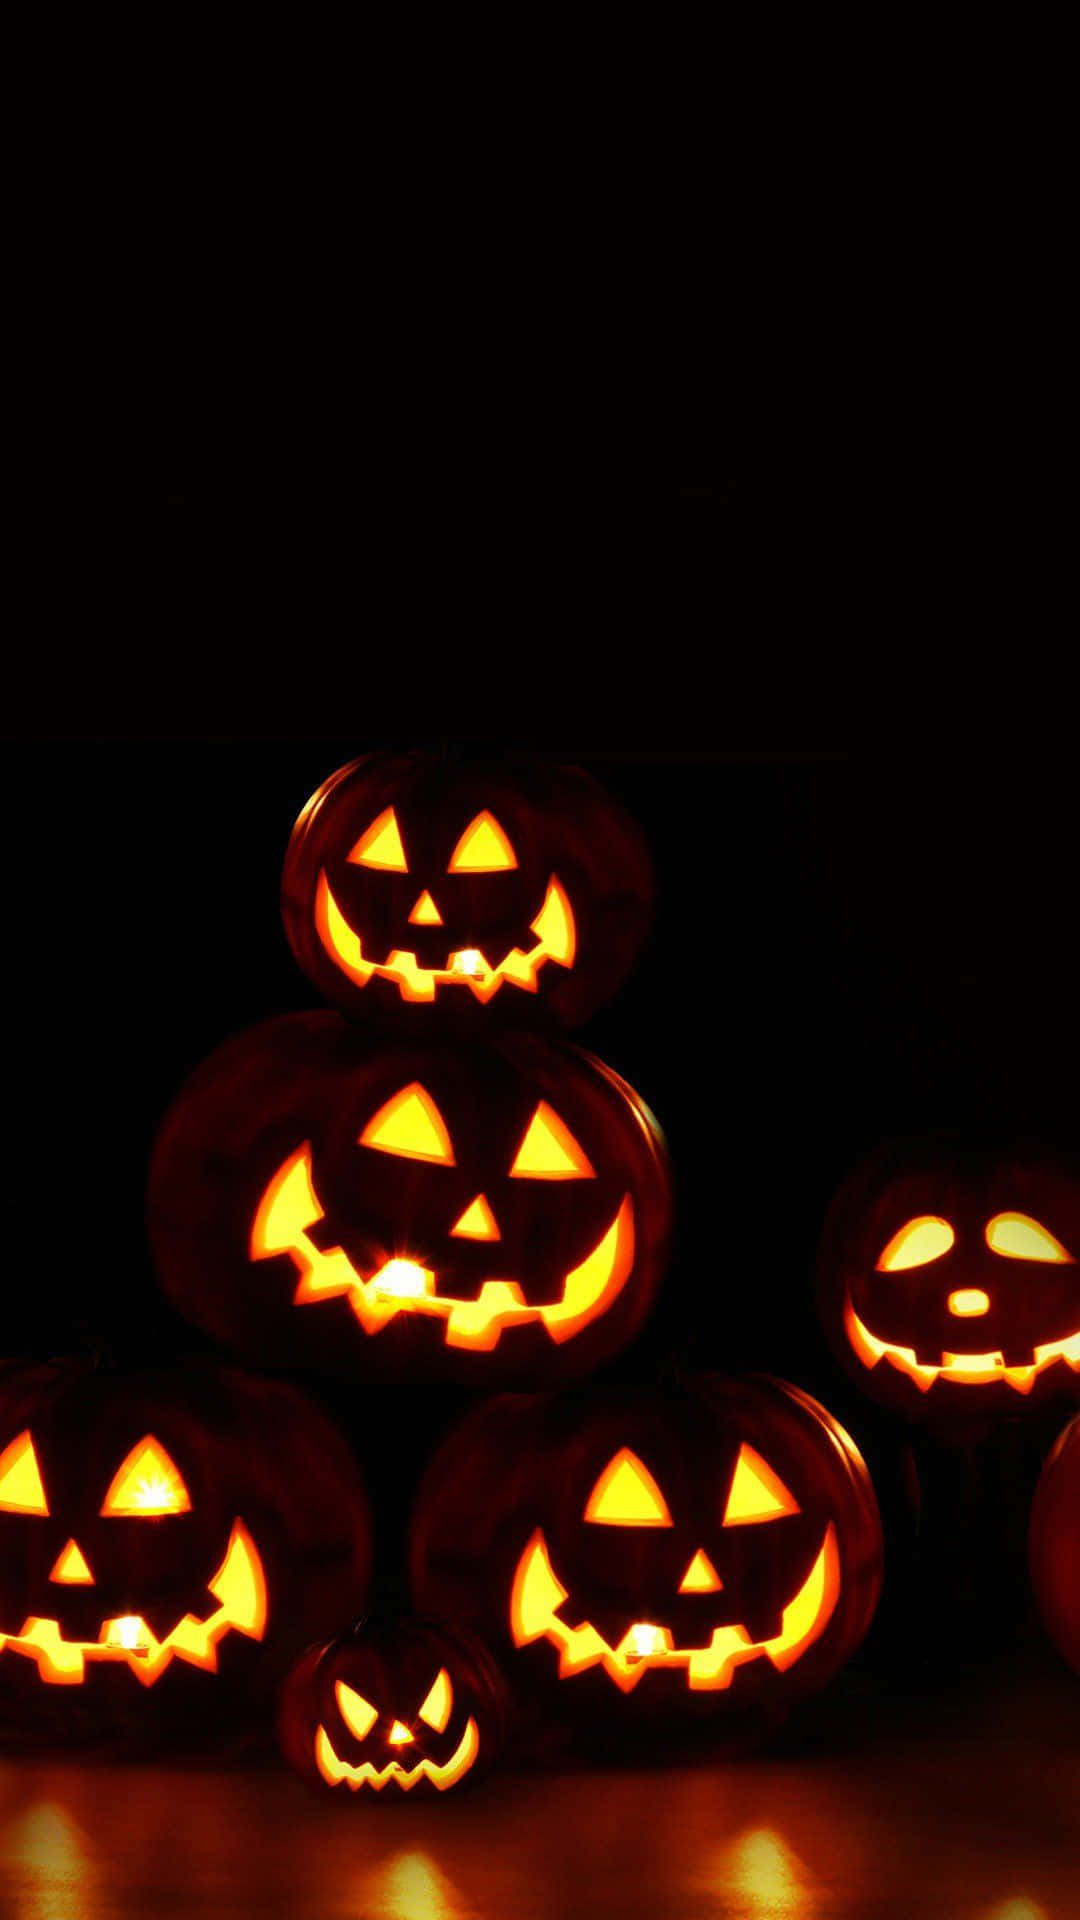 Fondode Pantalla De Halloween Para Iphone Con Aterradores Jack O'lanterns.